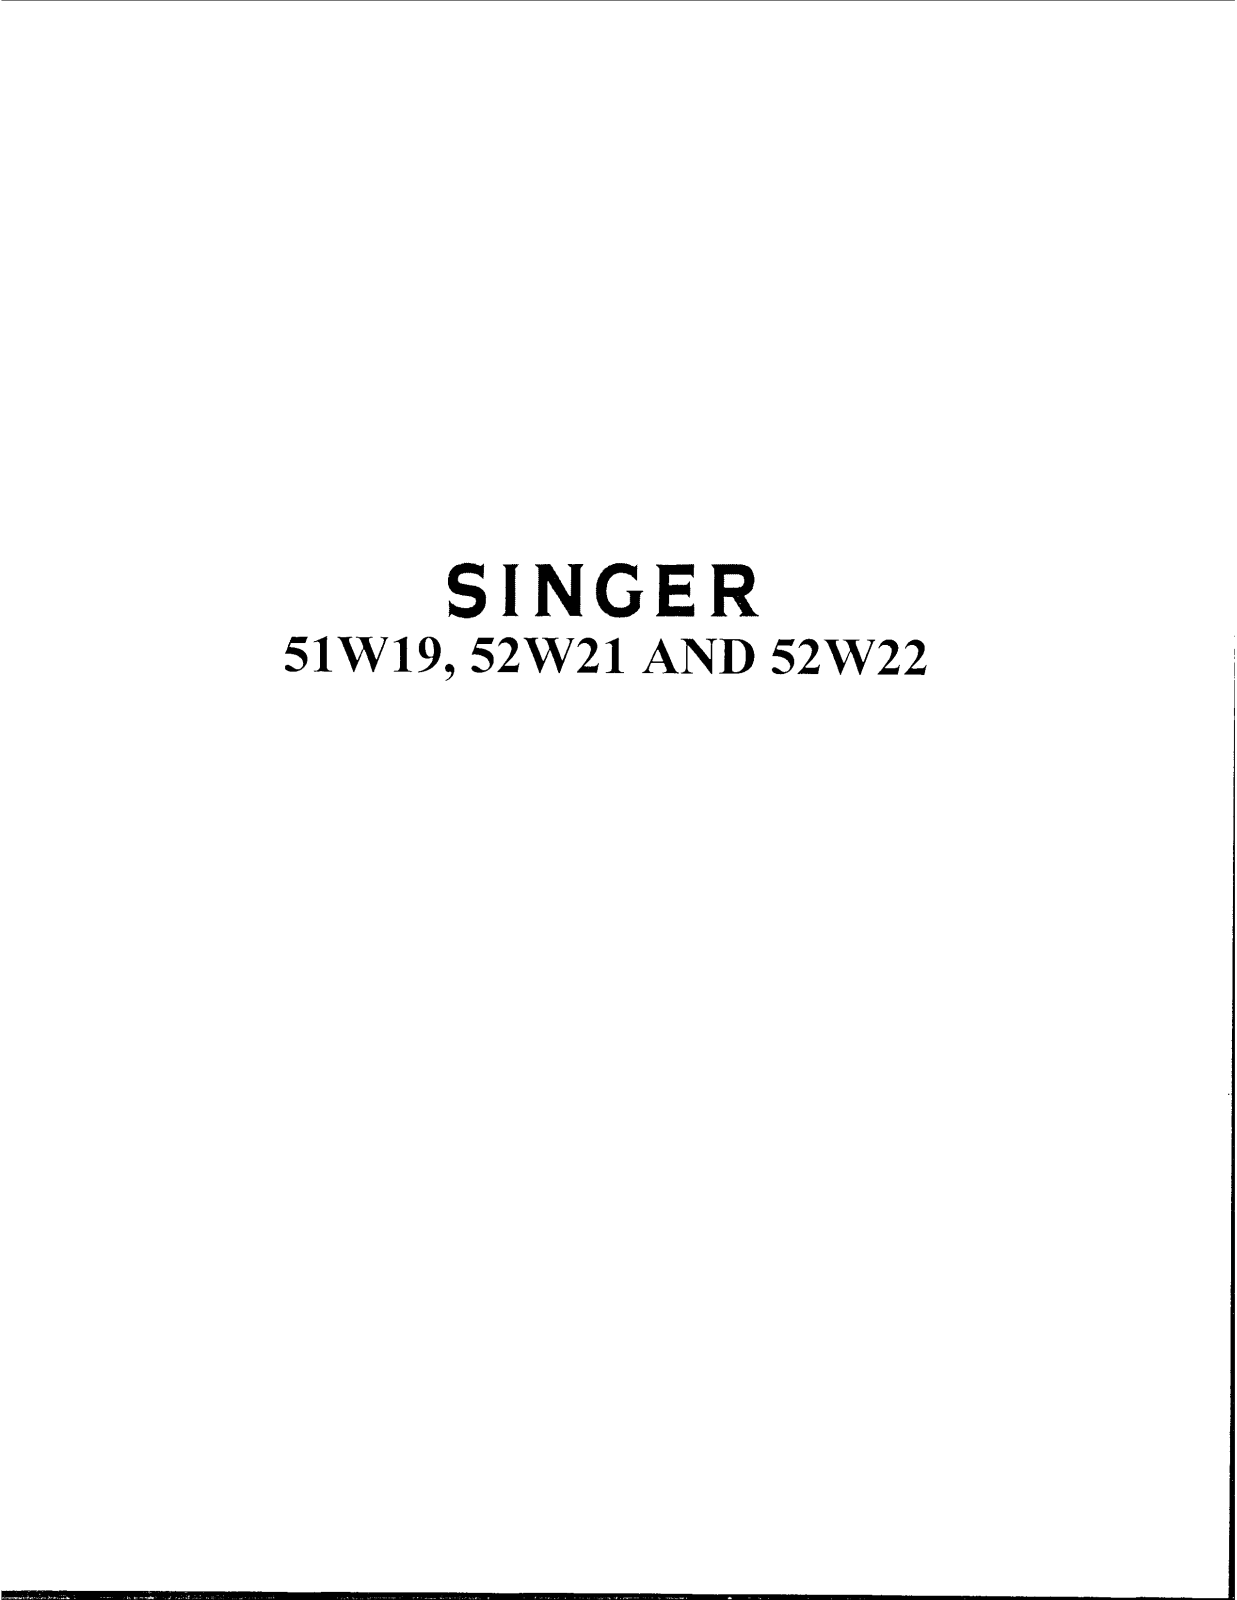 Singer 51W19, 52W21, 52W22 Instruction Manual